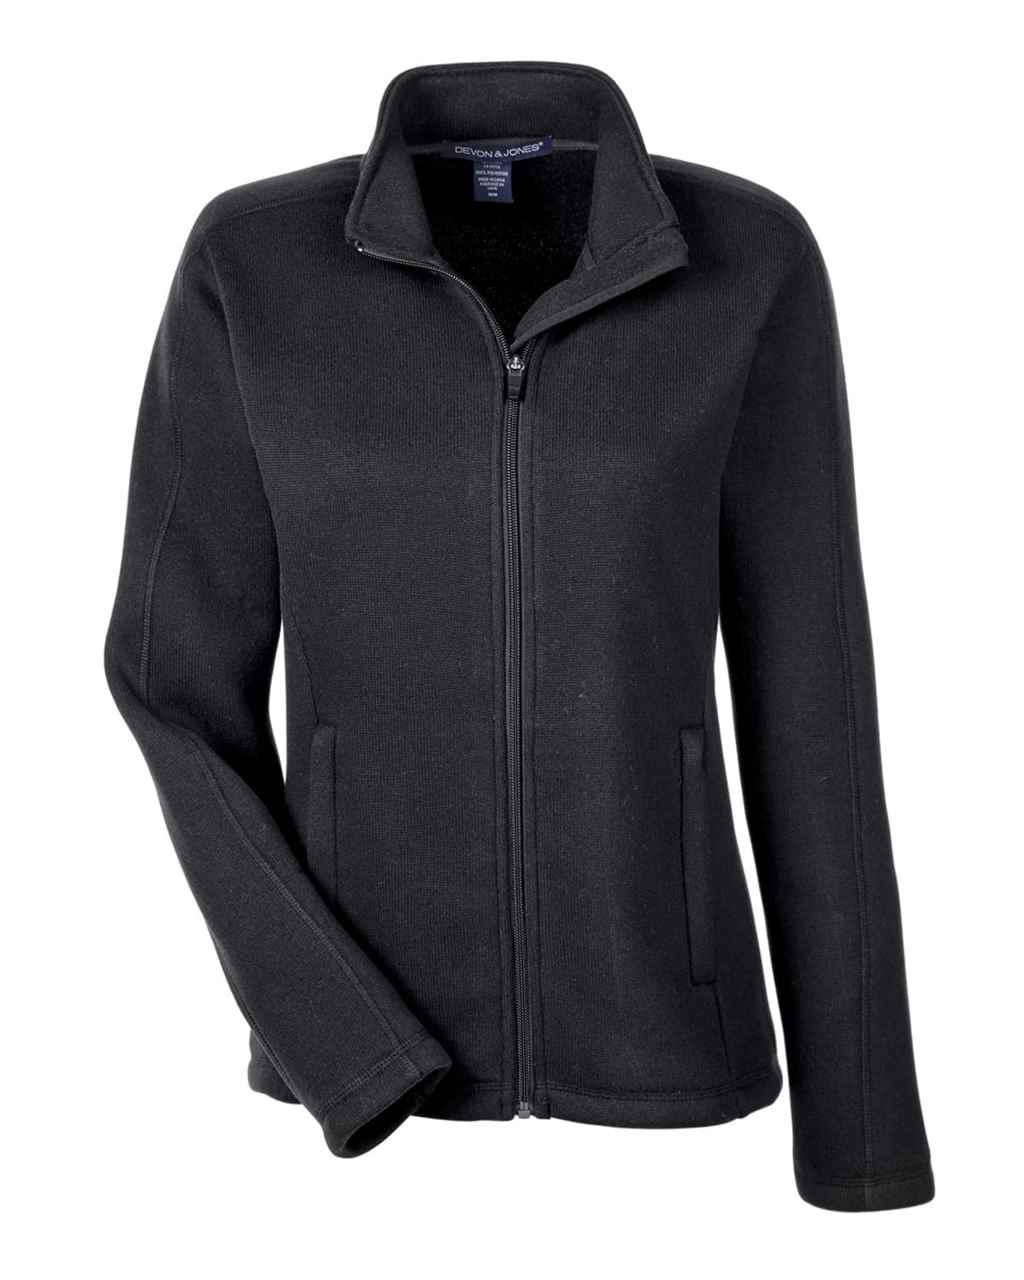 Picture of Devon & Jones Women's Bristol Full-Zip Sweater Fleece Jacket